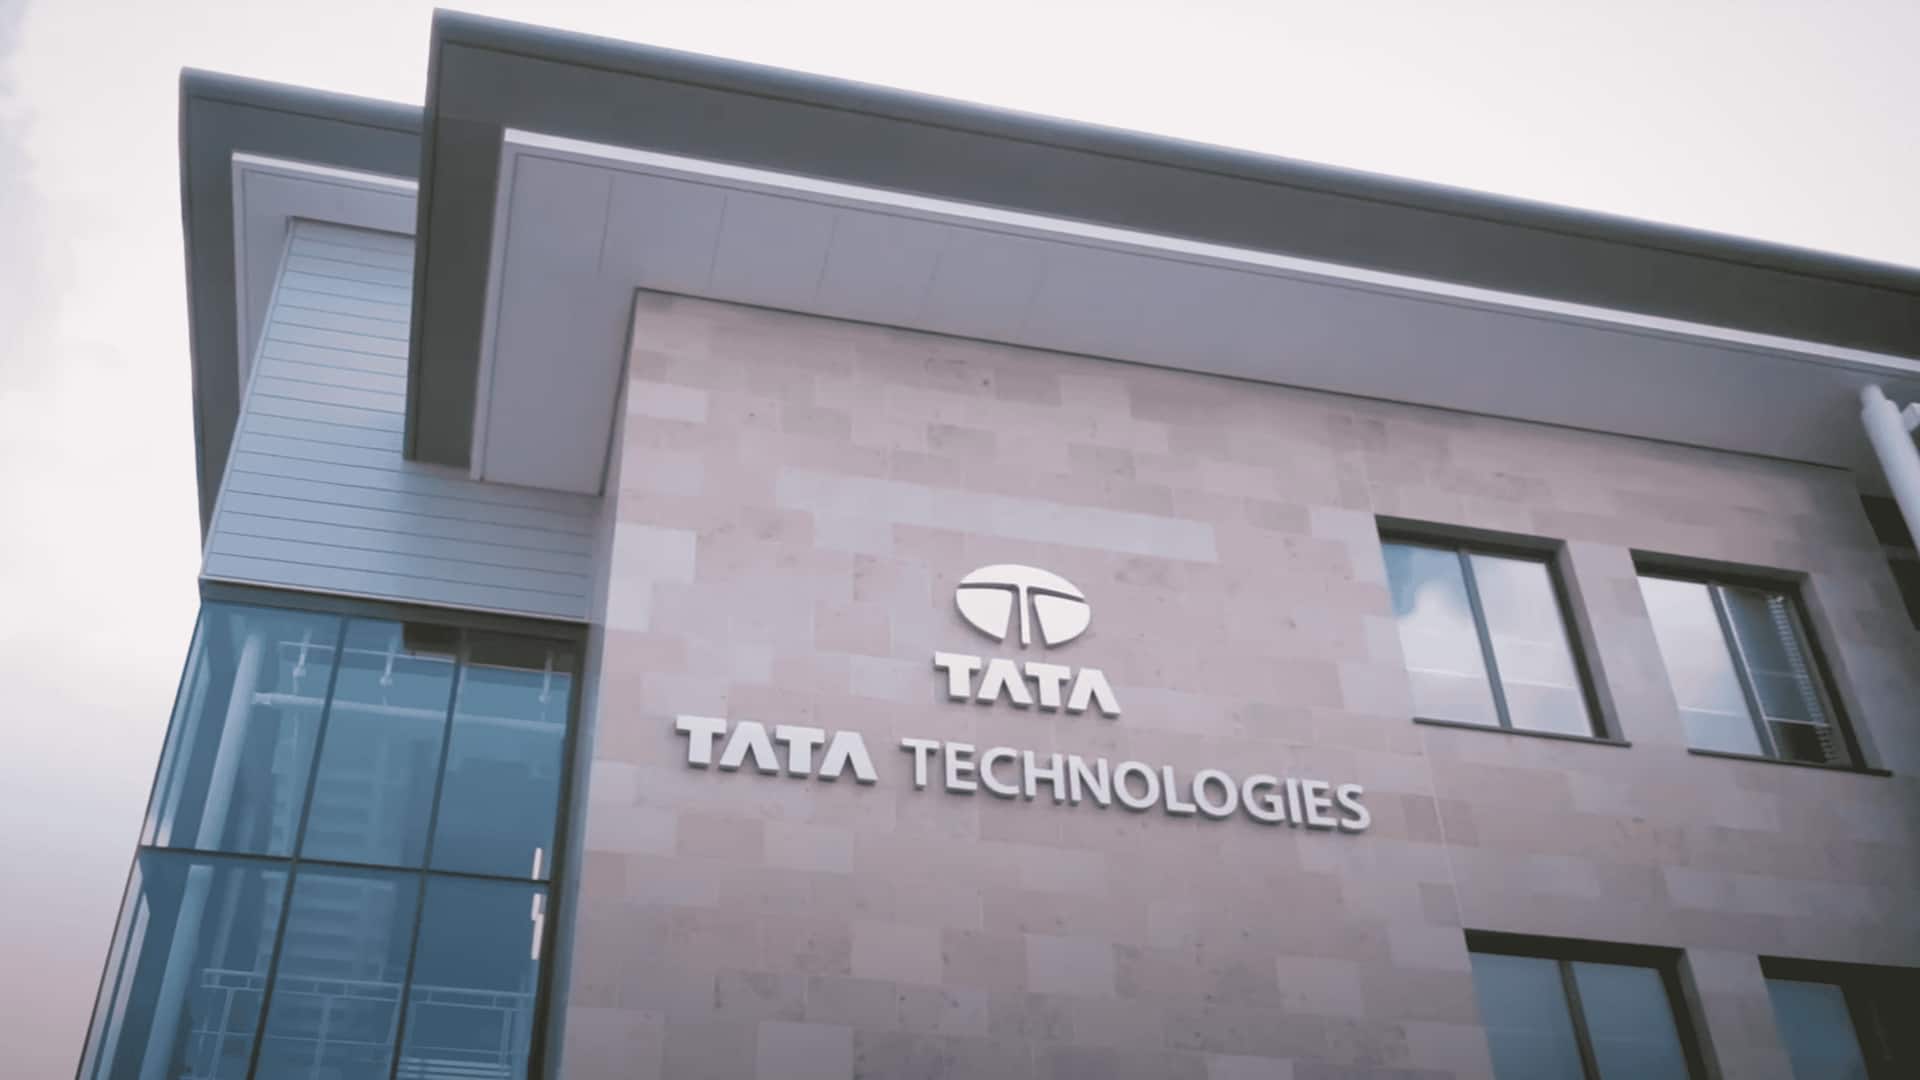 टाटा टेक्नोलॉजीज के शेयर पहले दिन 180 प्रतिशत तक उछले, निवेशकों में खुशी 